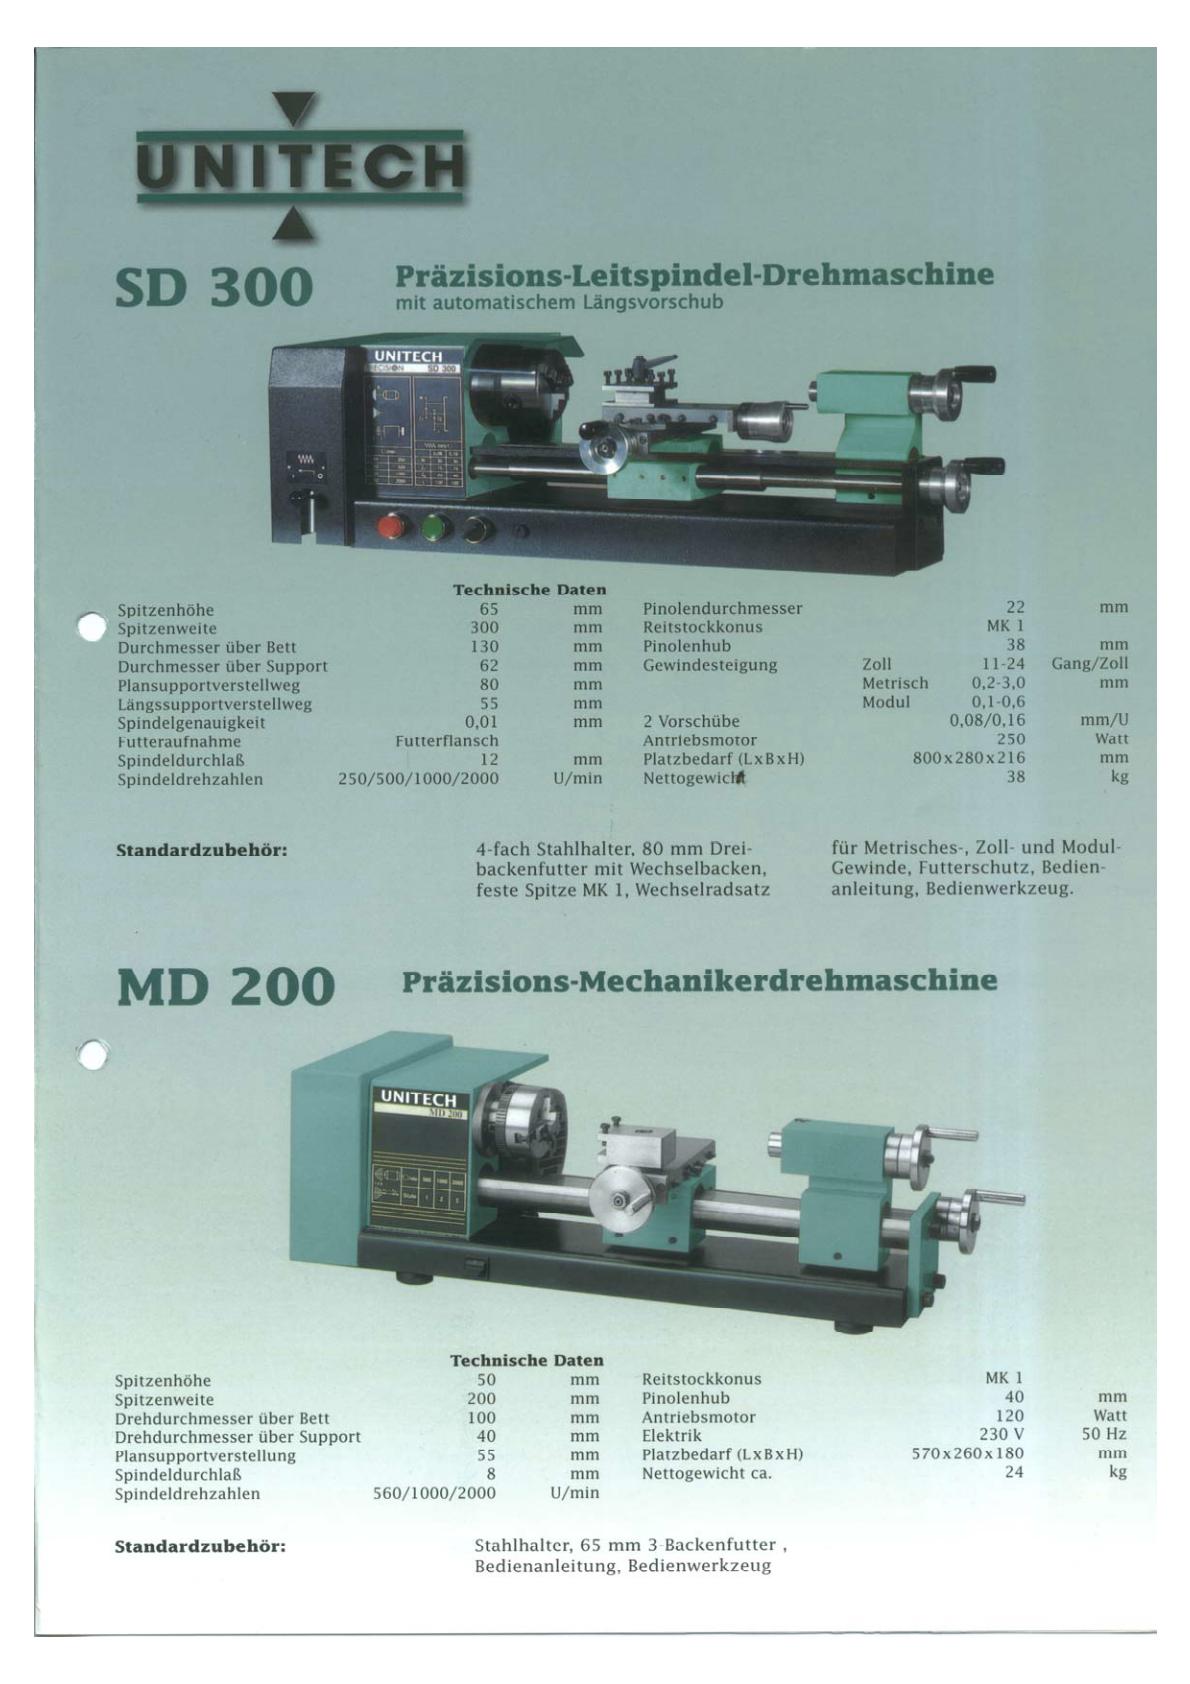 Hobbymat MD65 = Prazi / UniTech SD300 Uw11130